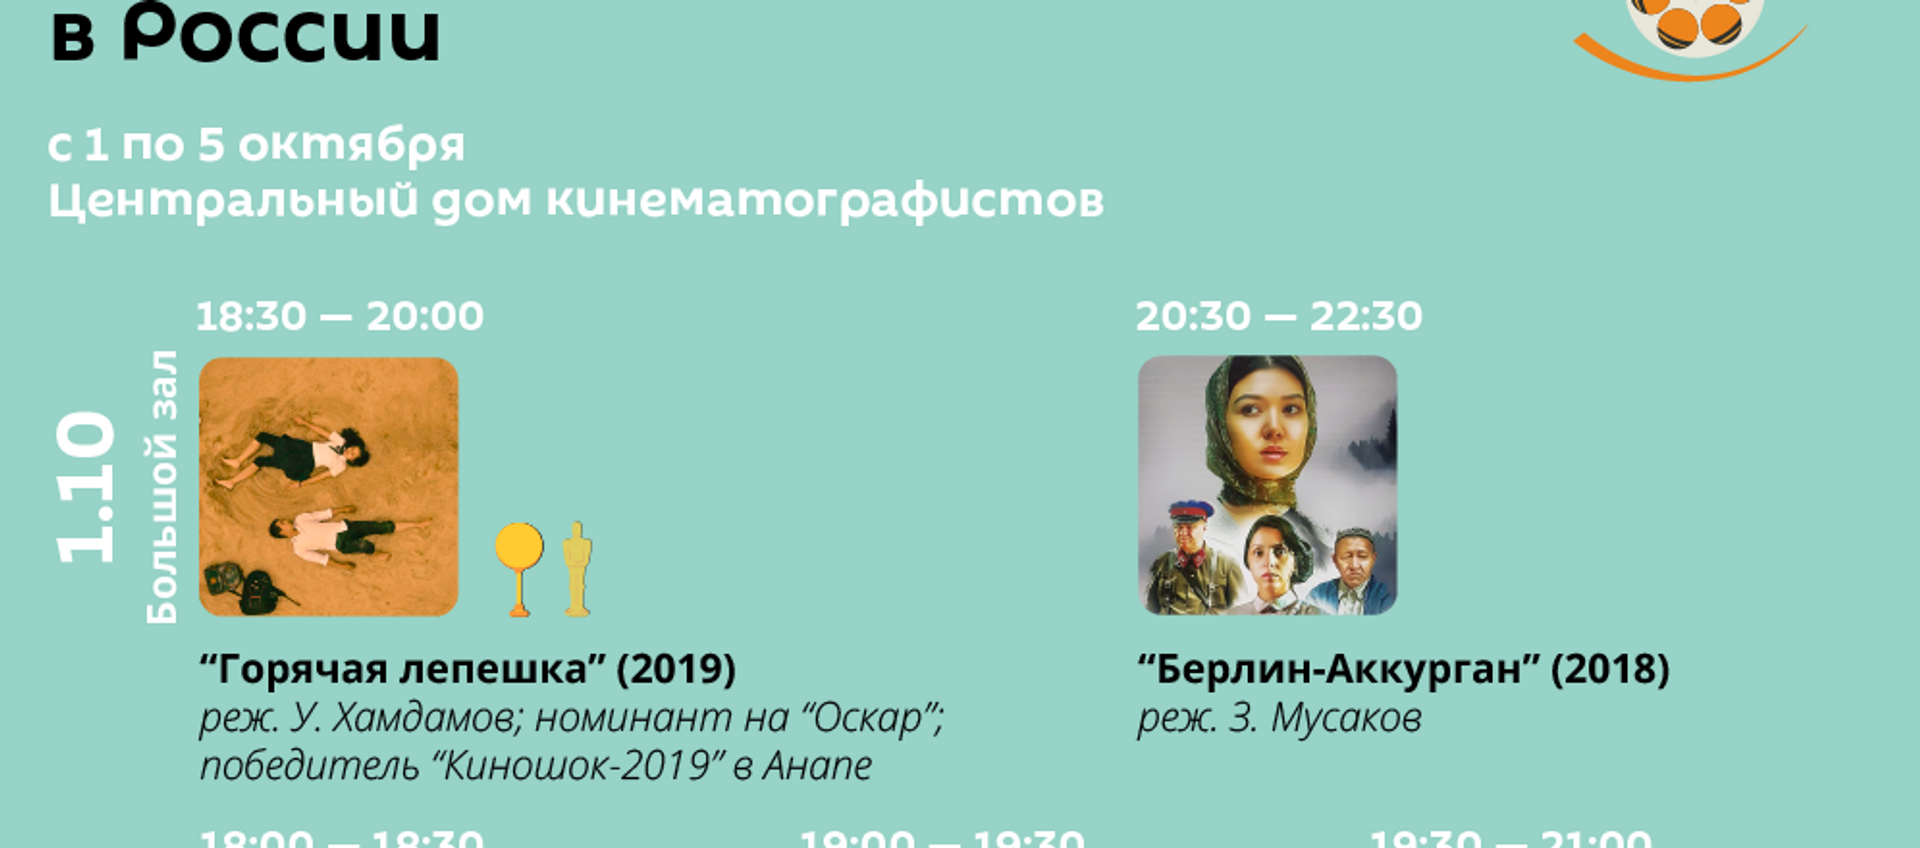 Дни узбекского кино в Москве - Sputnik Узбекистан, 1920, 01.10.2019